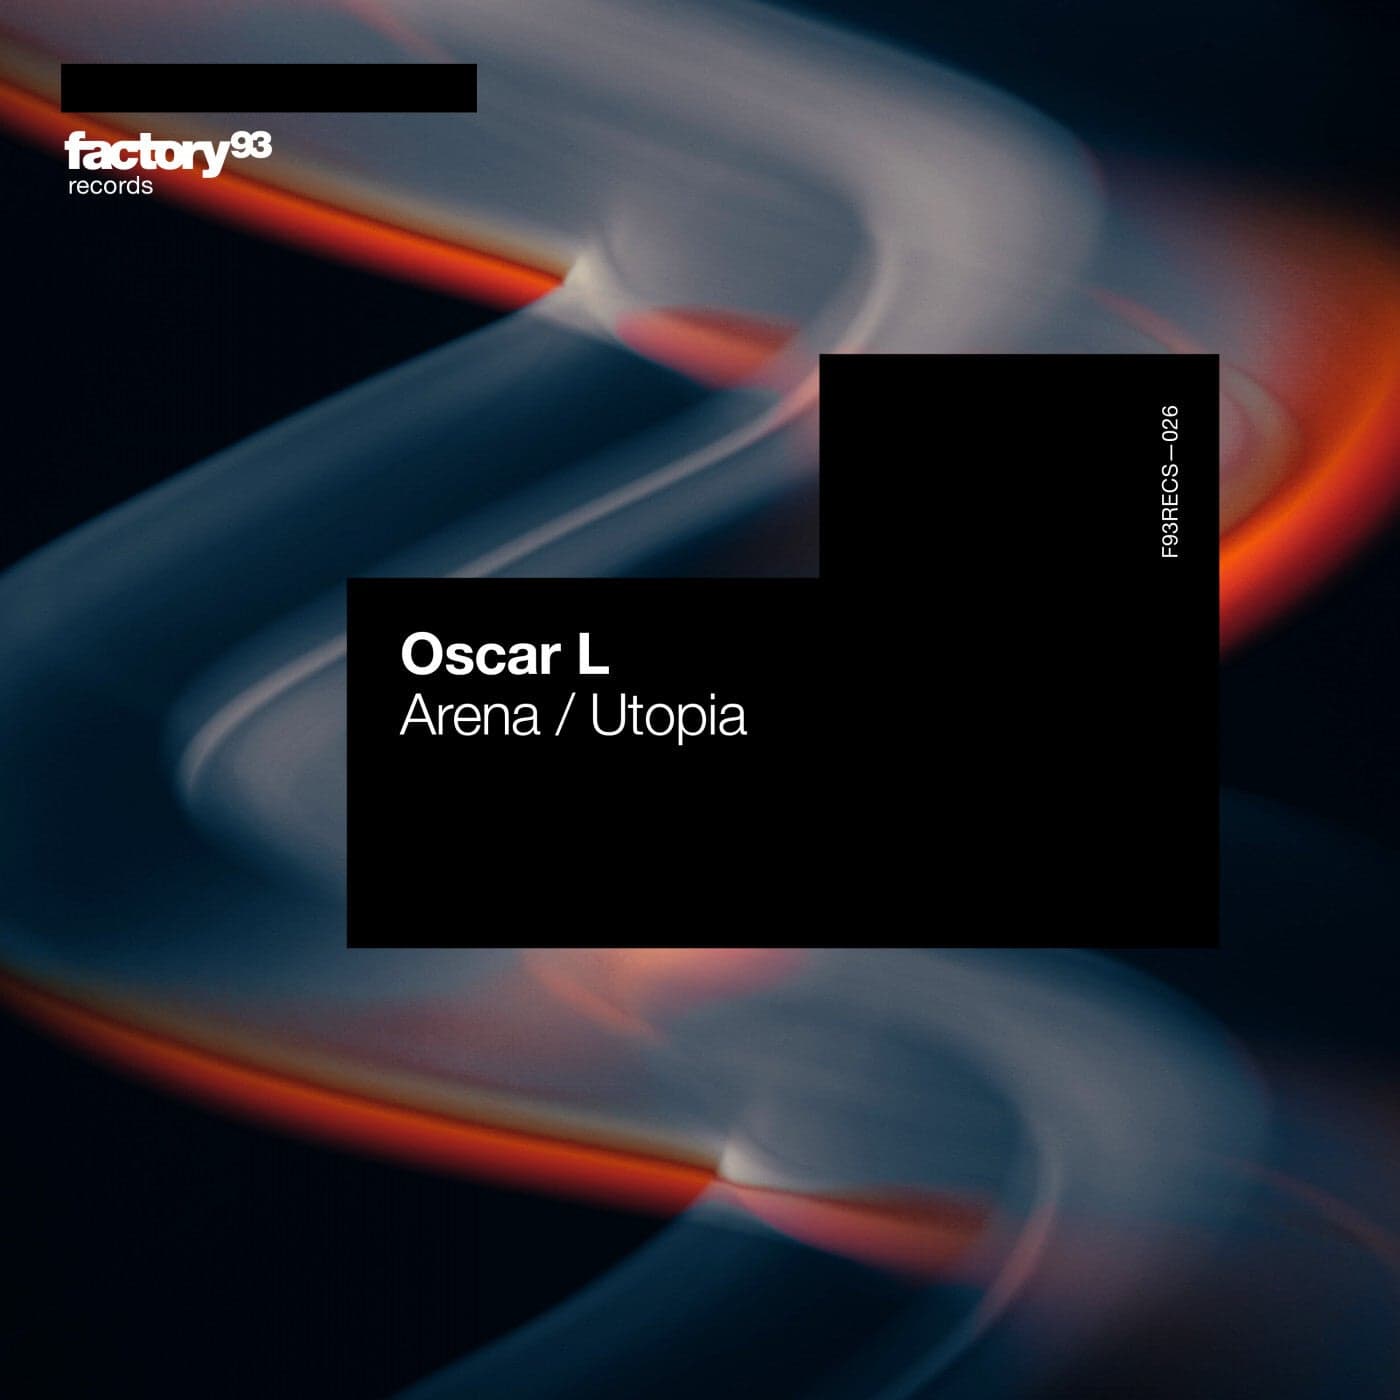 image cover: Oscar L - Arena / Utopia / F93RECS026B